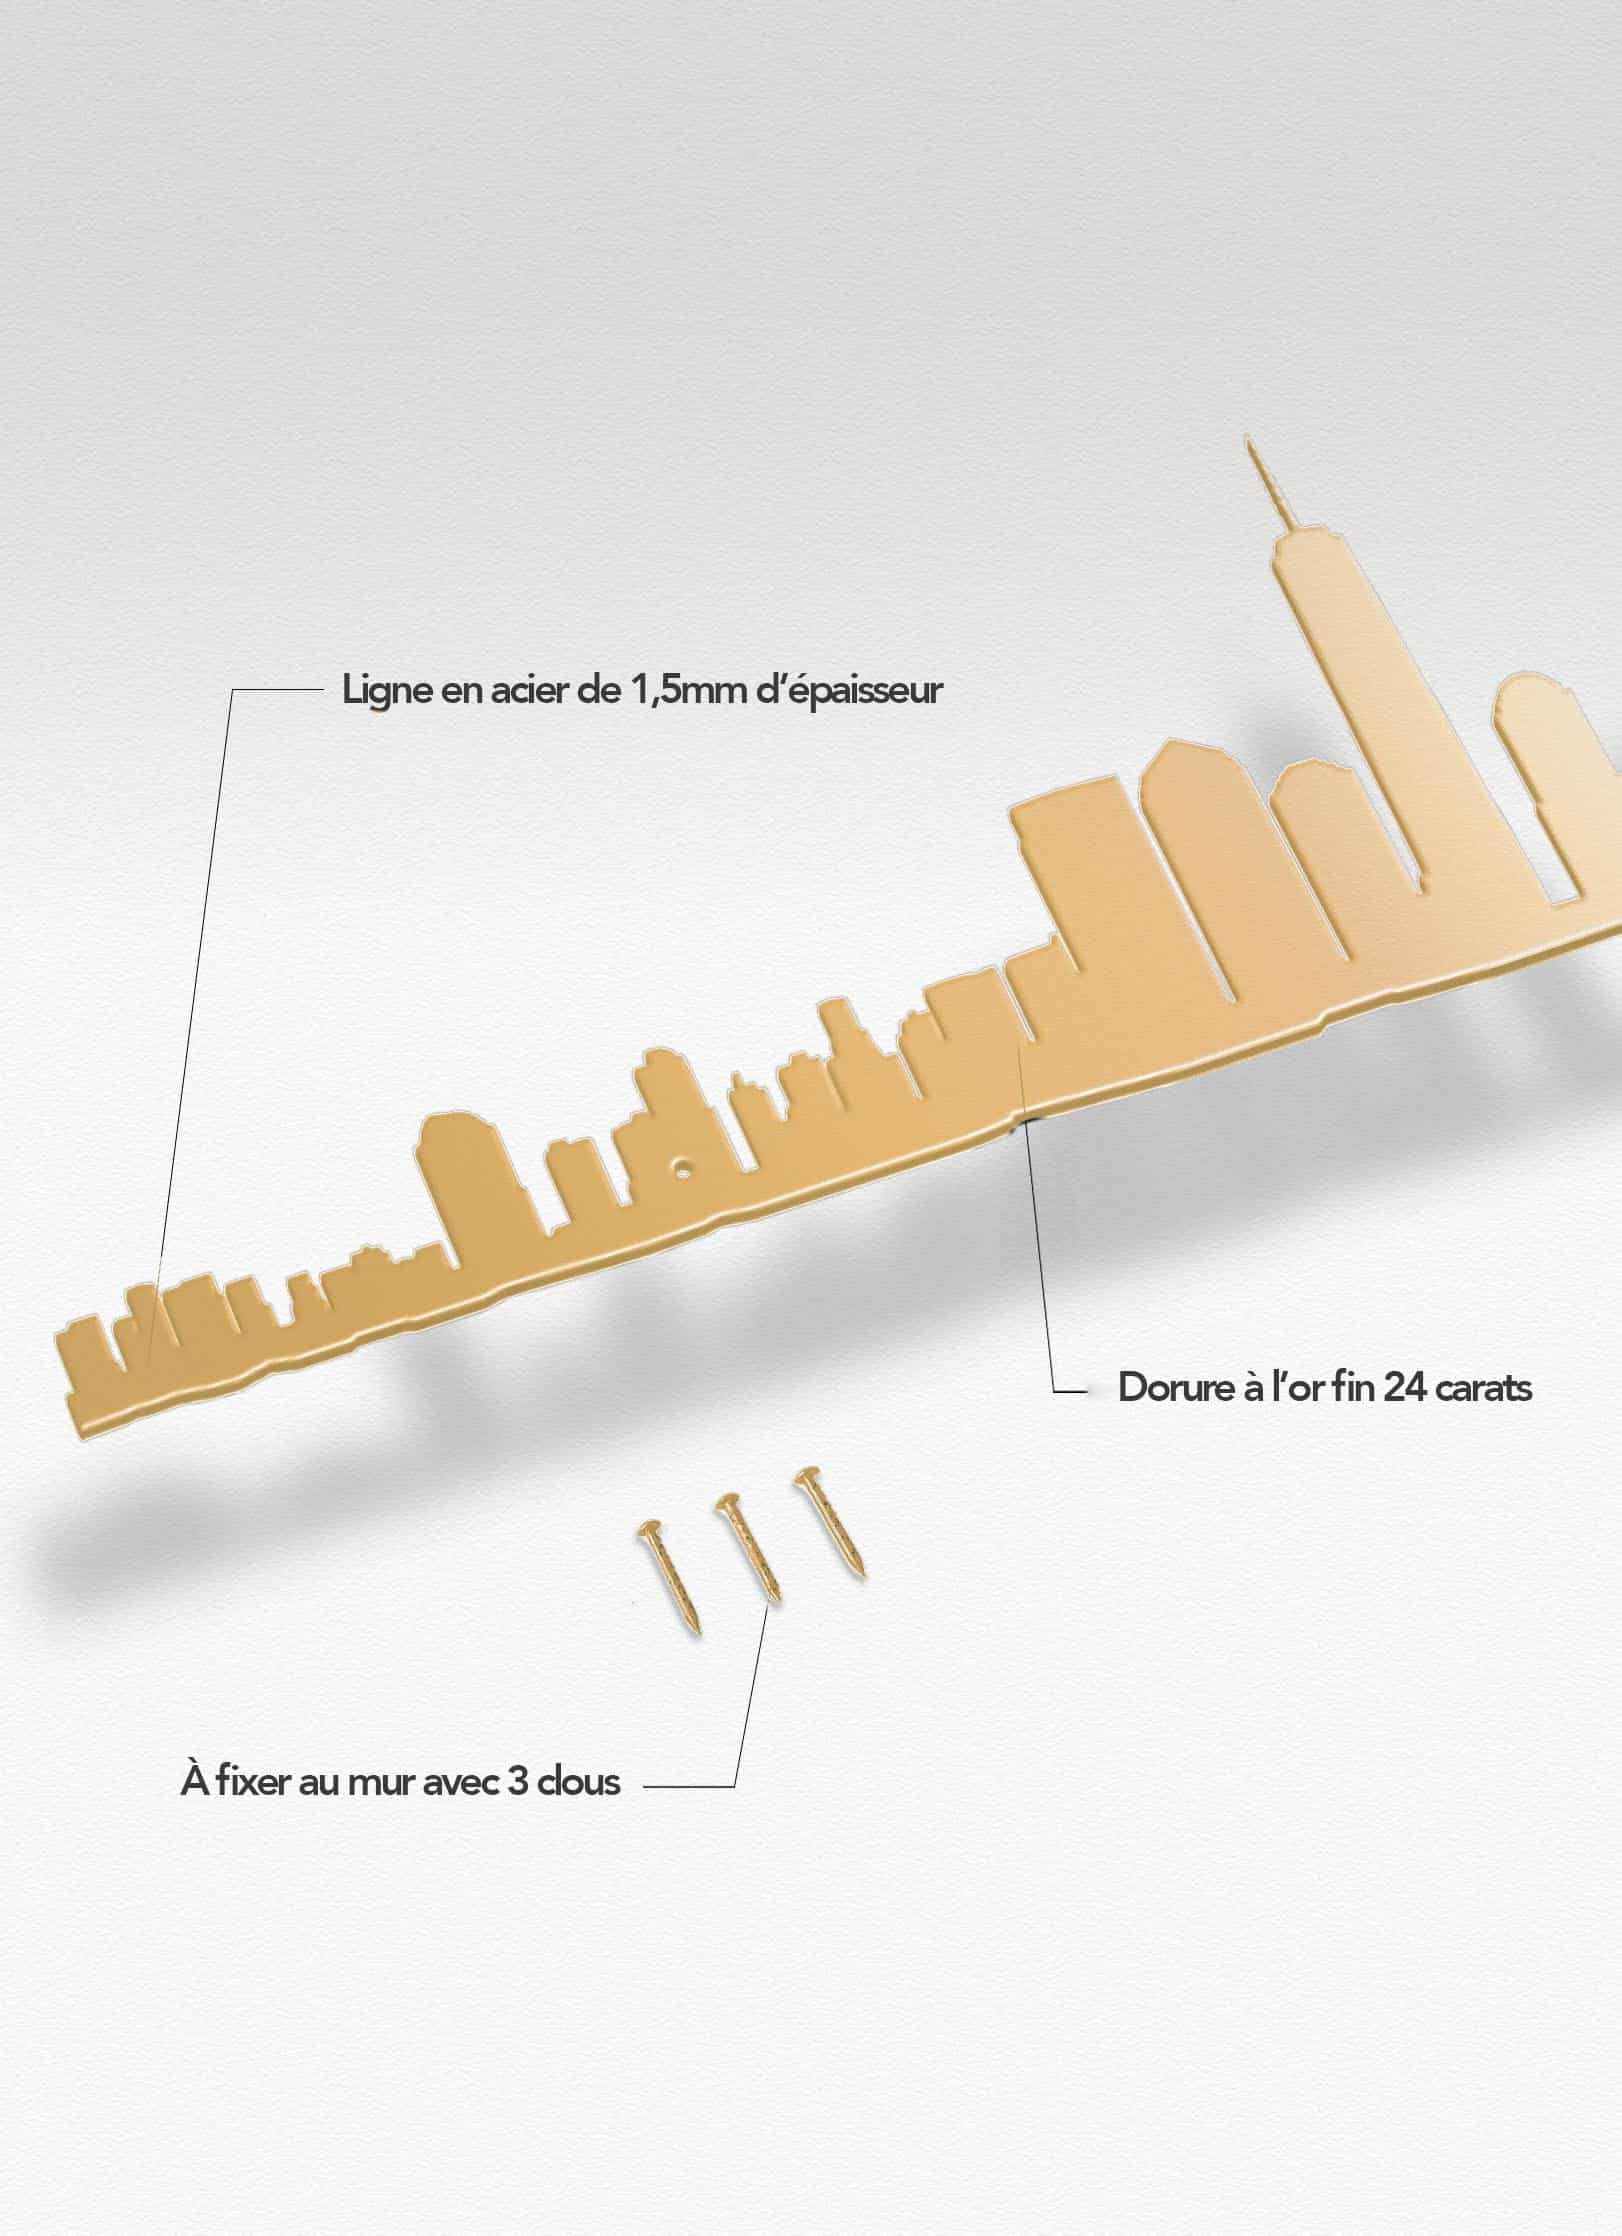 Presentation of the skyline of New-York doré